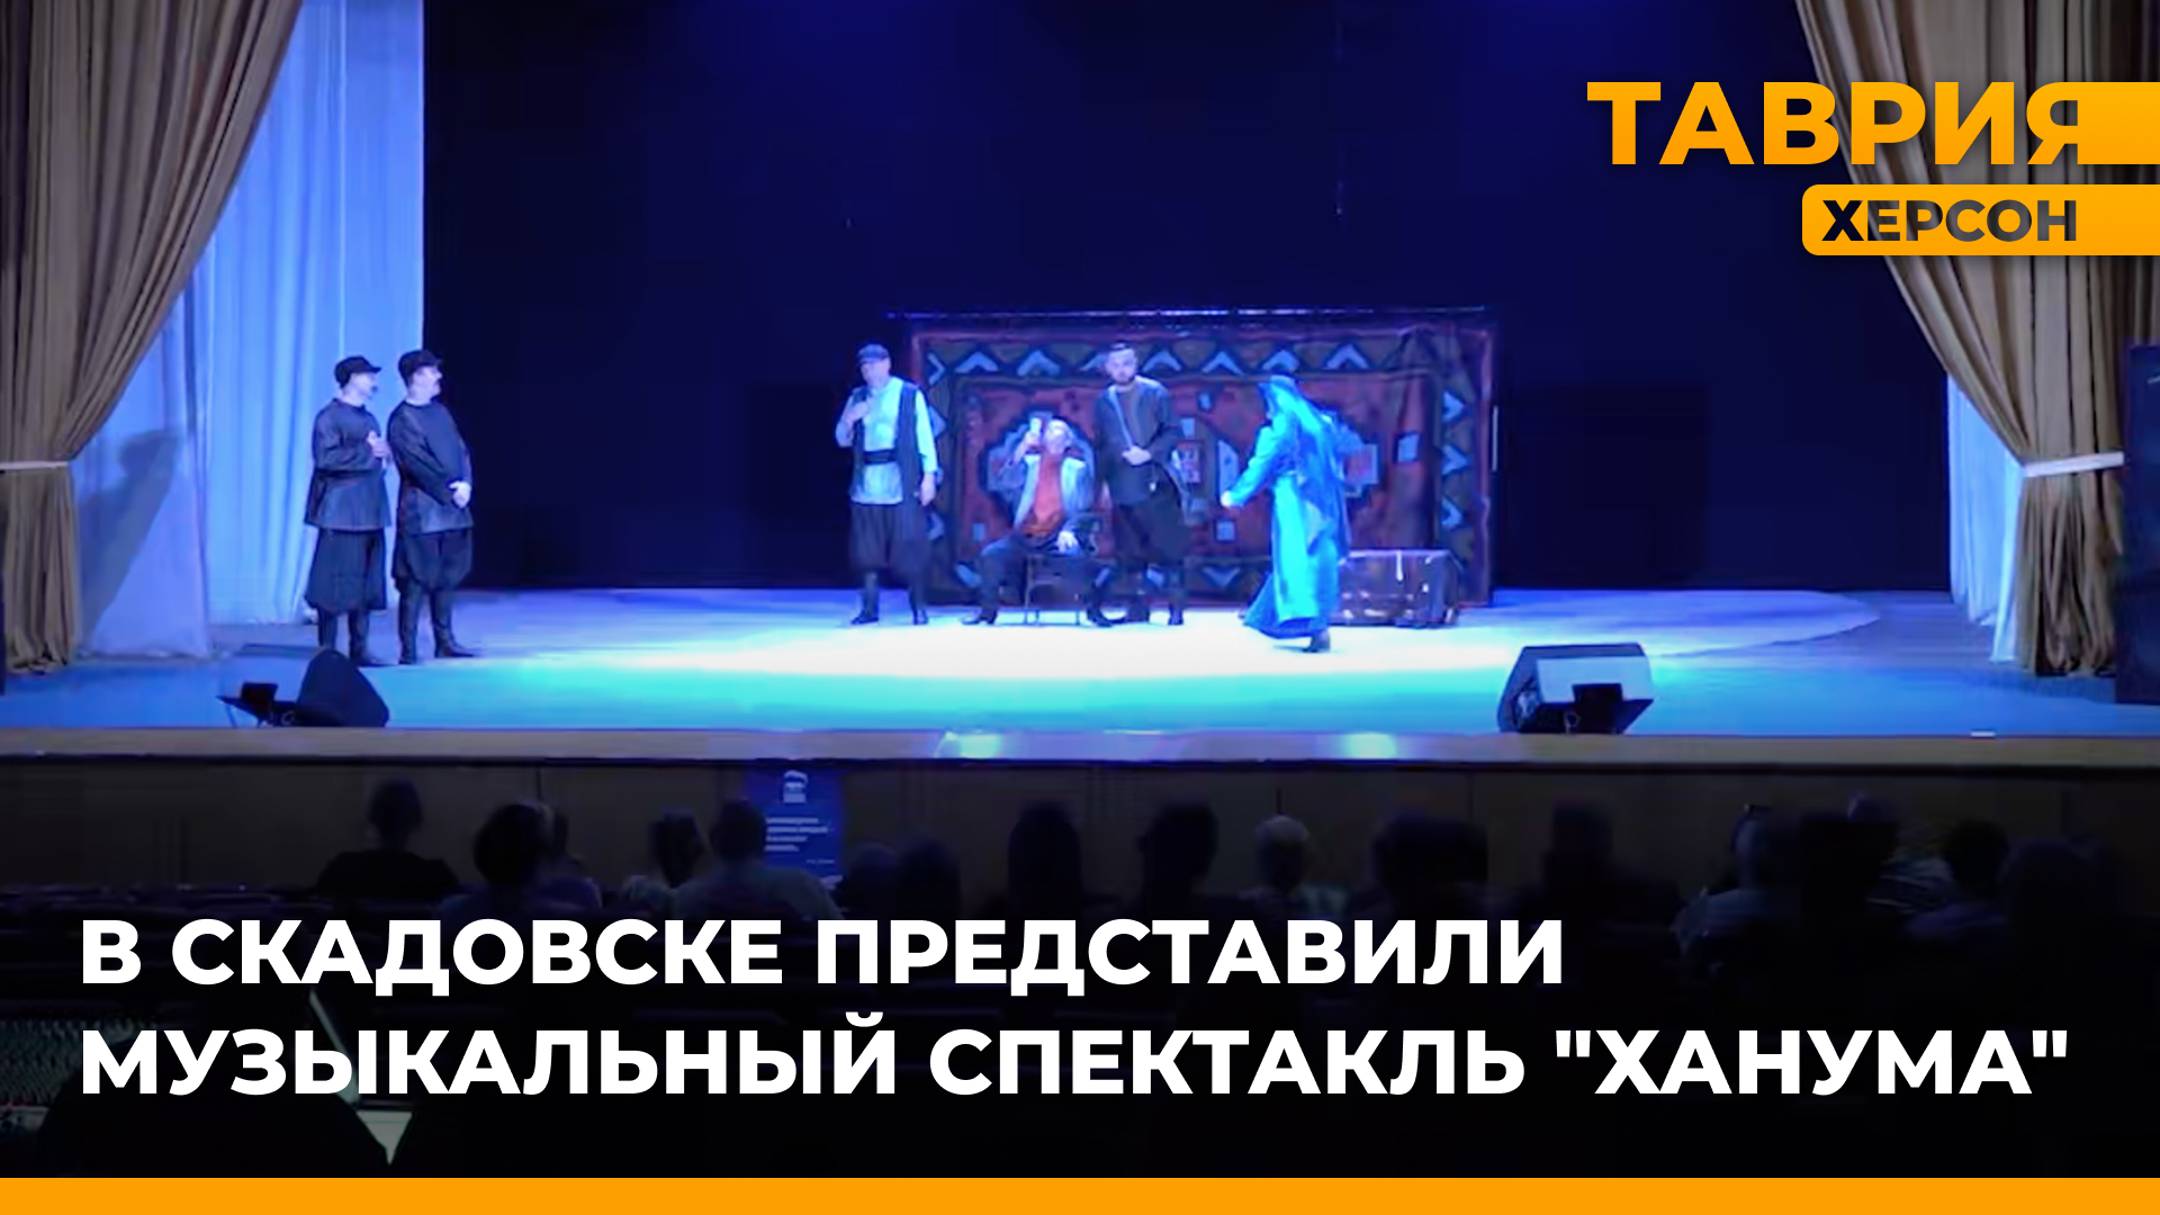 Артисты Херсонского драматического театра представили музыкальный спектакль "Ханума" в Скадовске